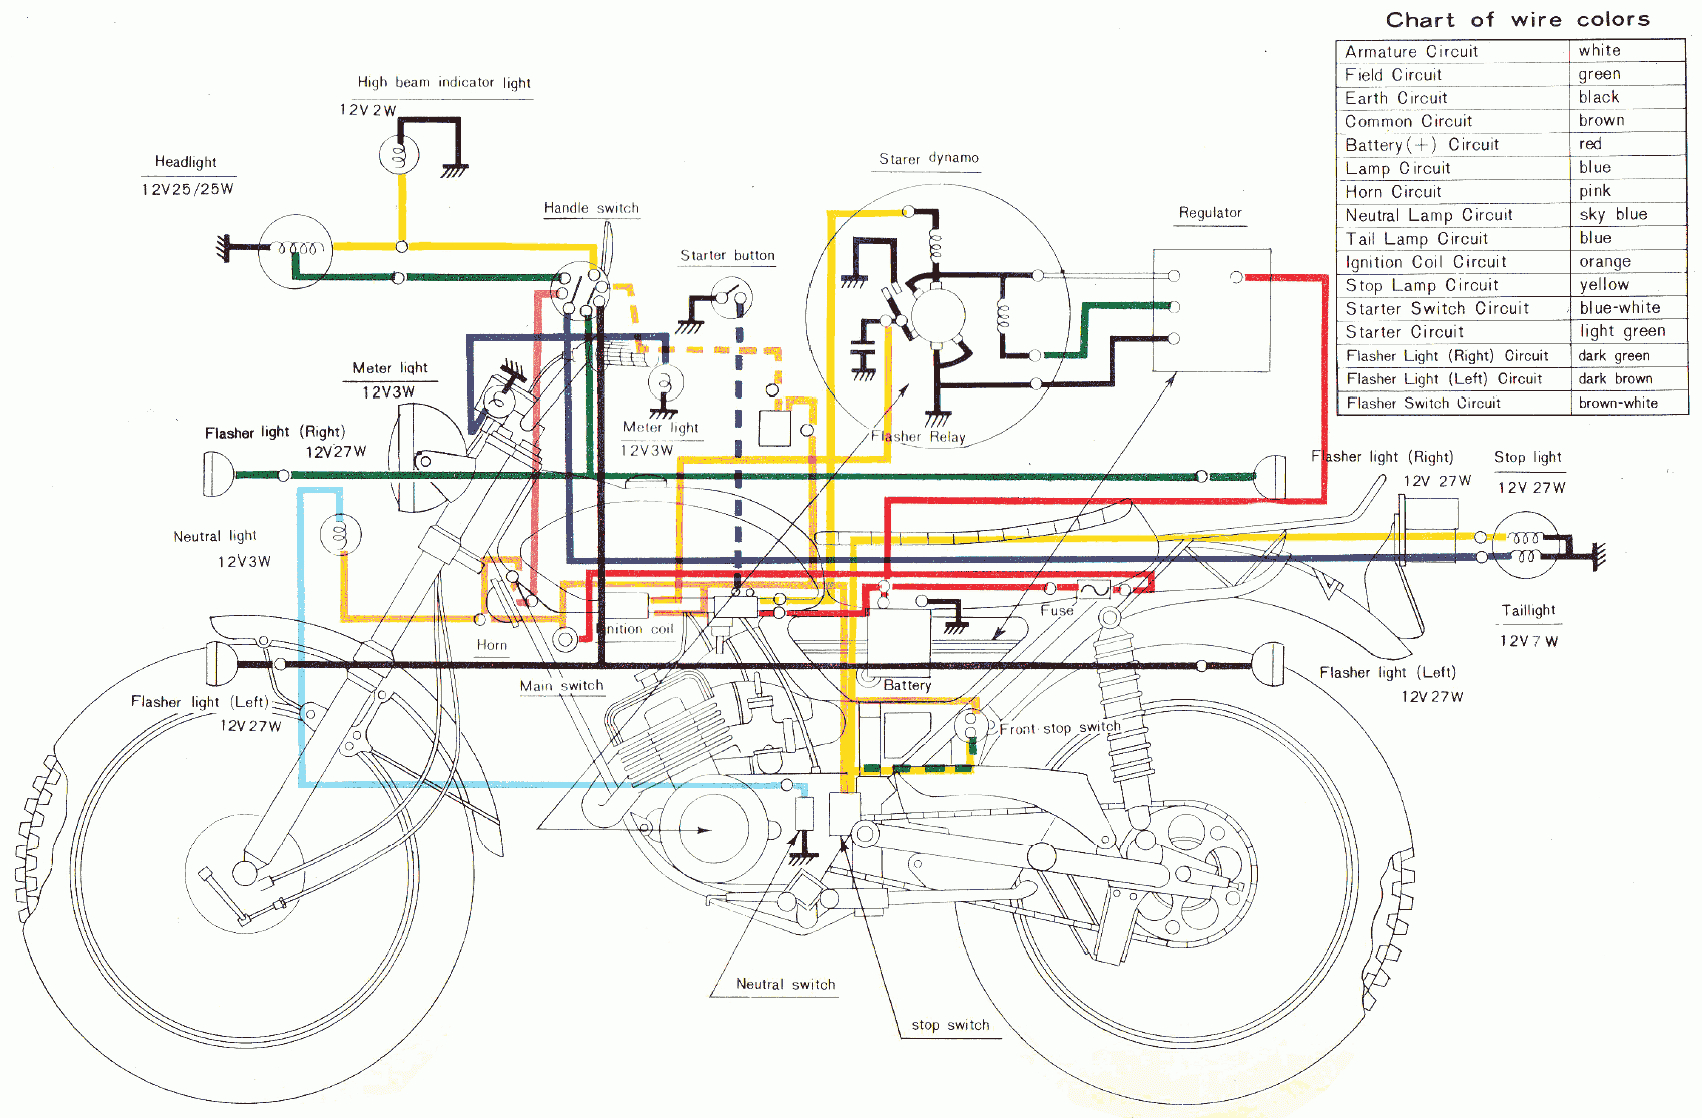 Motorcycle Wiring Schematics Diagram - Wiring Diagram Online - Motorcycle Wiring Diagram